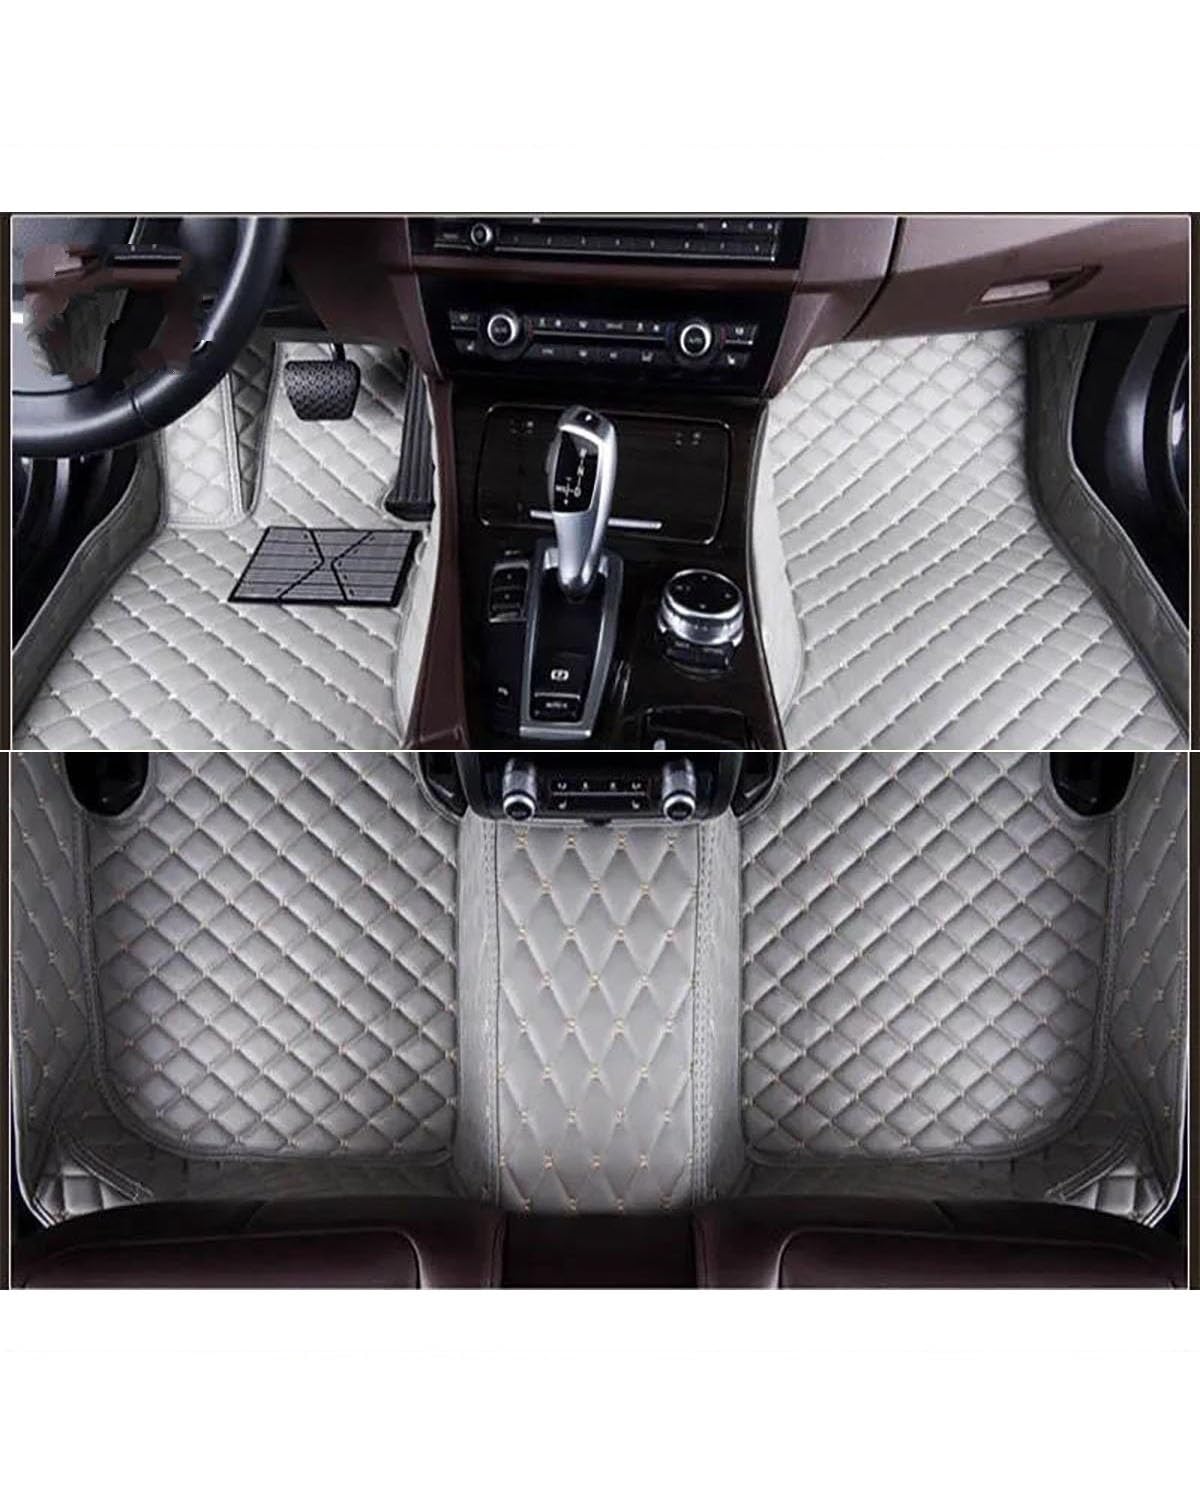 Auto Fußmatten Auto-Fußmatten Für Suzuki Für S-Cross 2014 2015 2016 2017 2018 2019 2020 2021 Autoteppiche Fuß Coche Autoinnenausstattung Autofußmatten(Gray) von XJJJWL